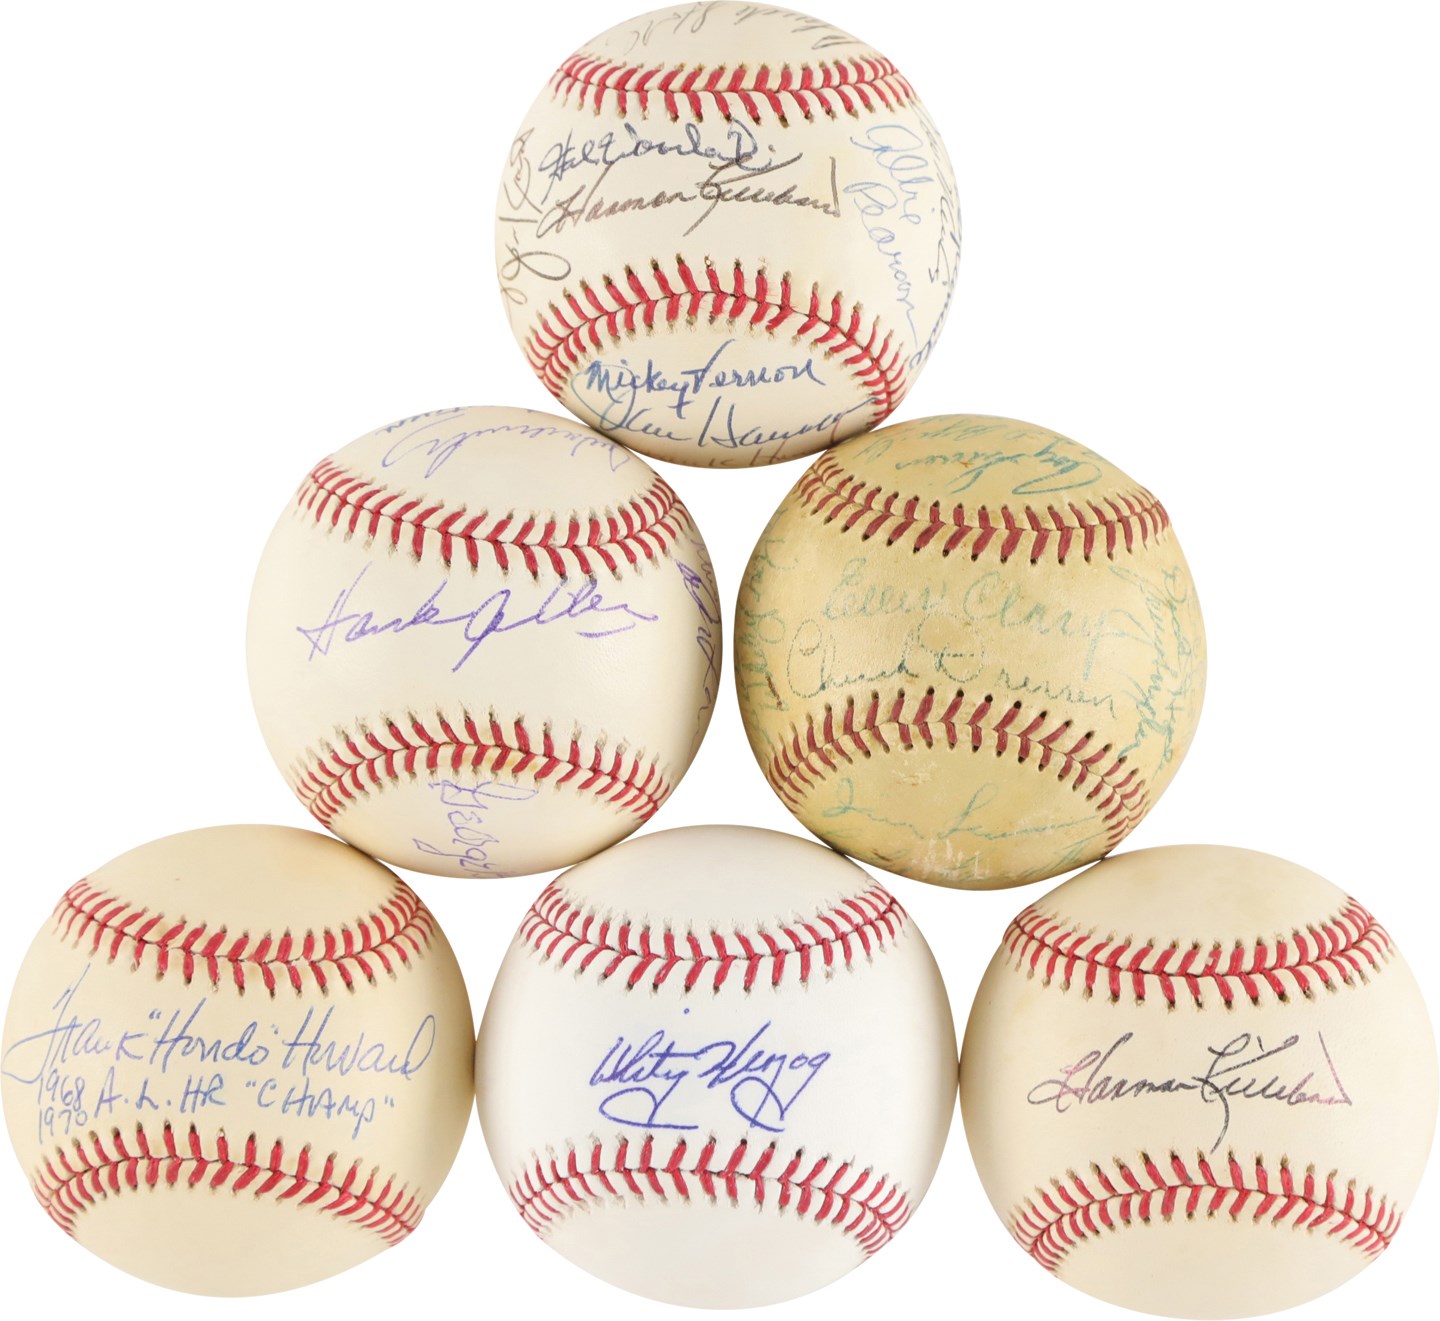 Baseball Autographs - Washington Senators Greats Signed Baseball Collection (32)